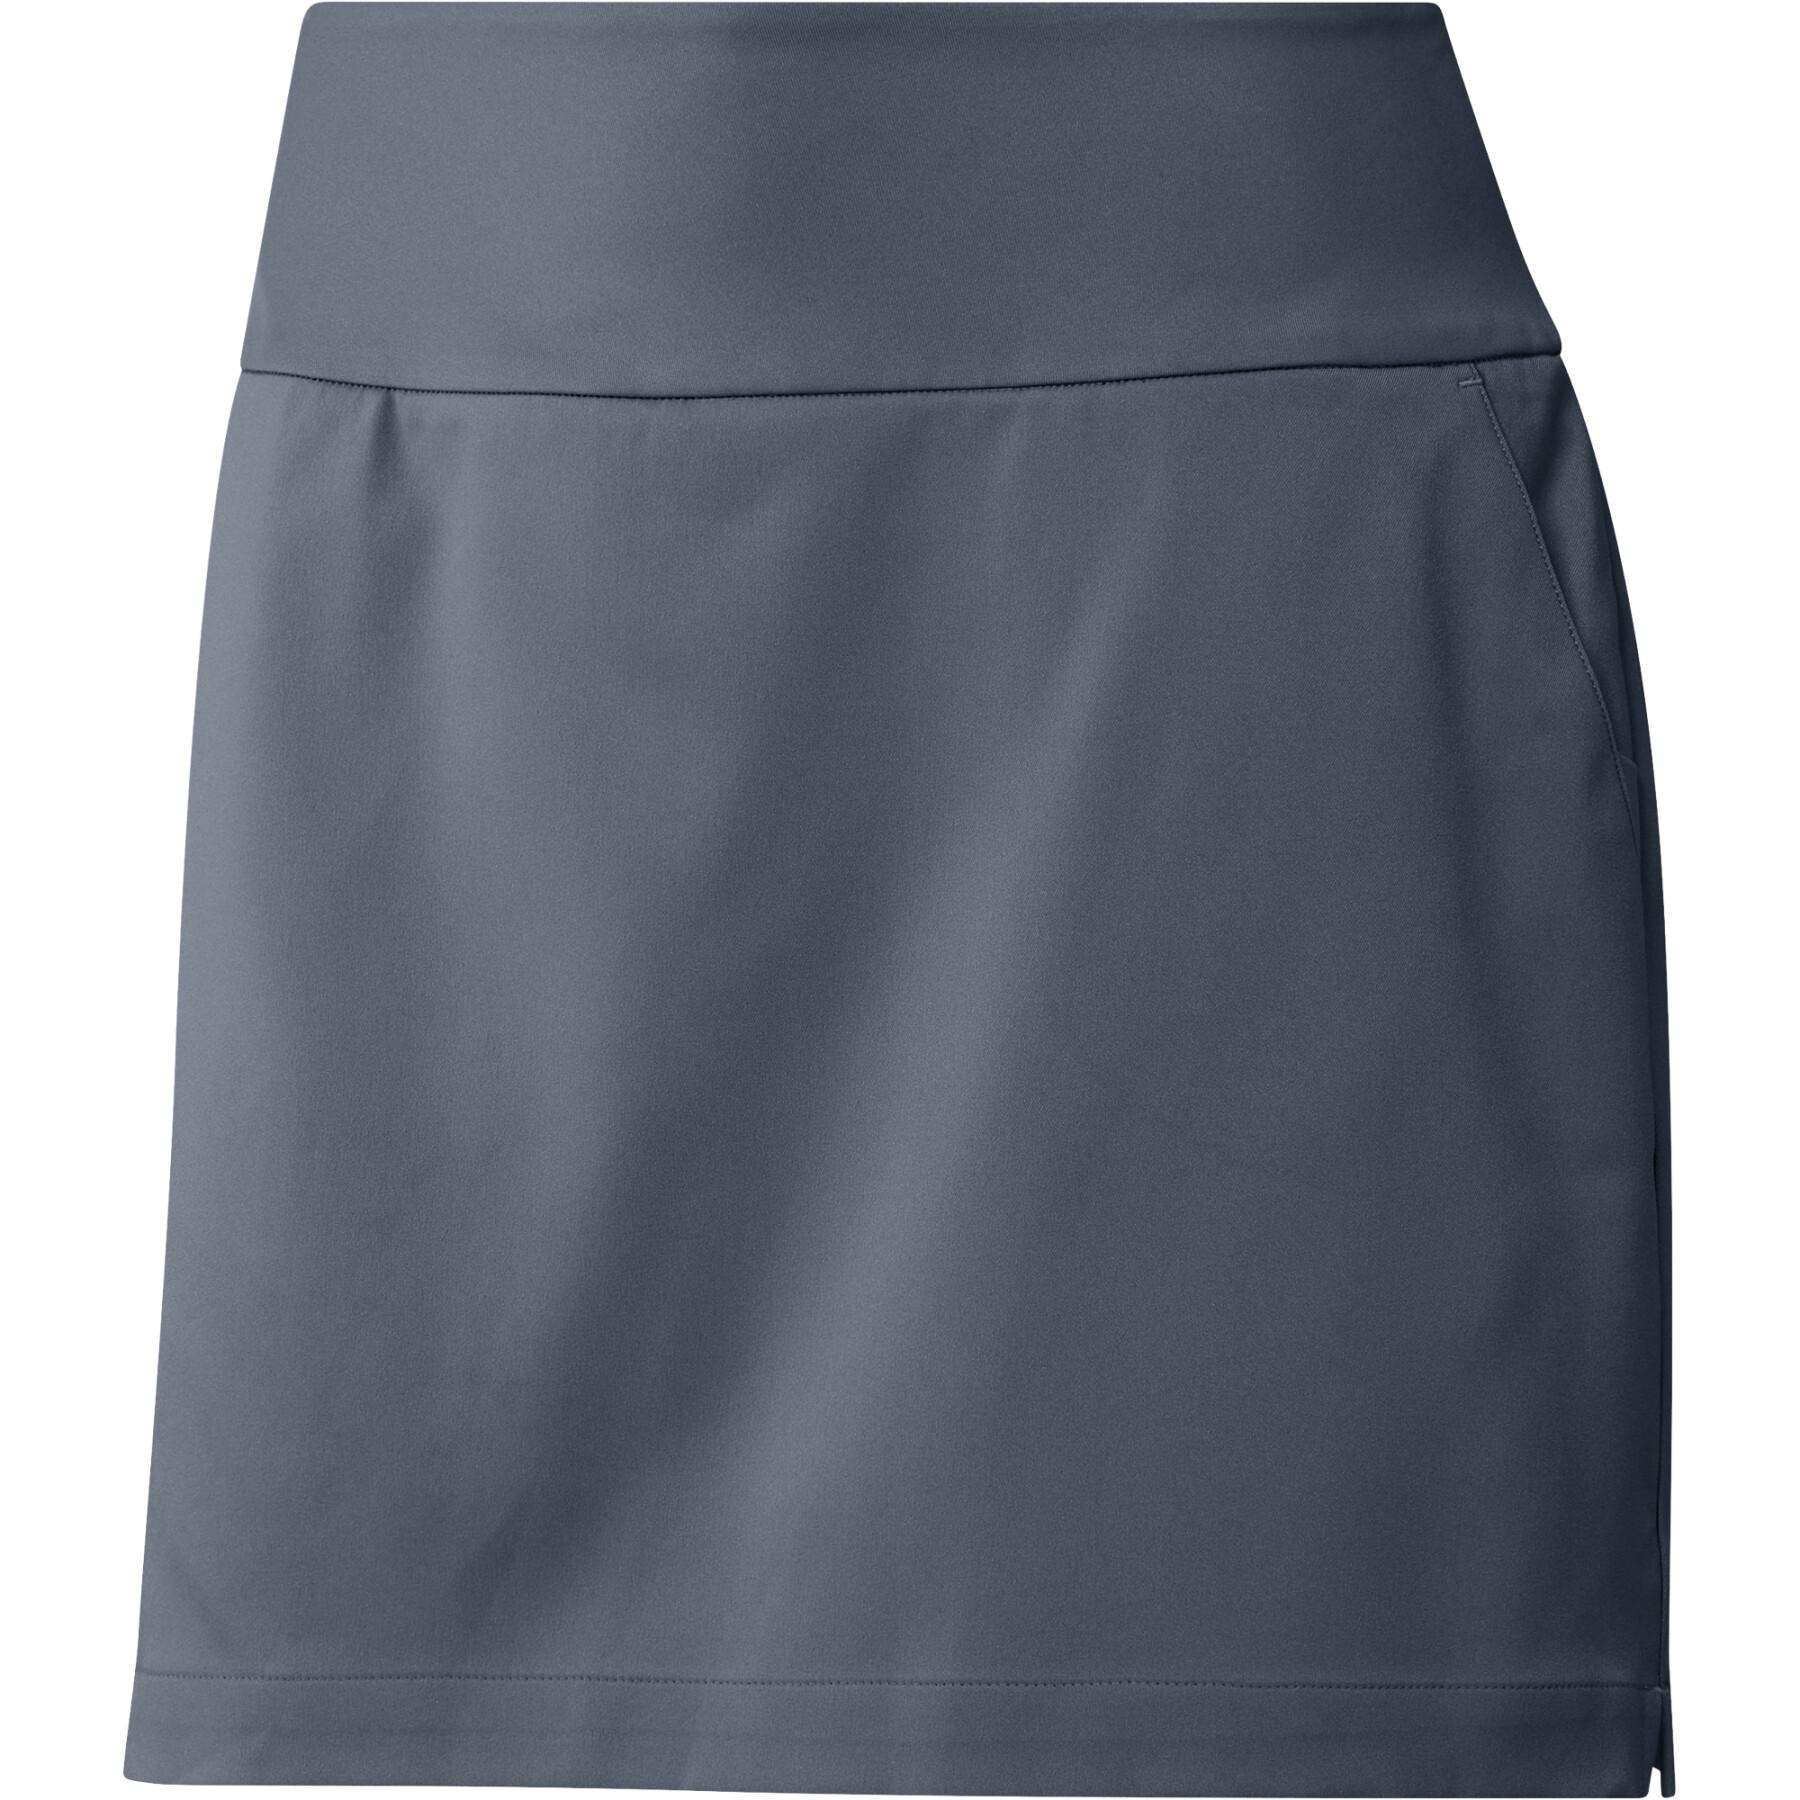 Falda de mujer adidas Ultimate365 Solid